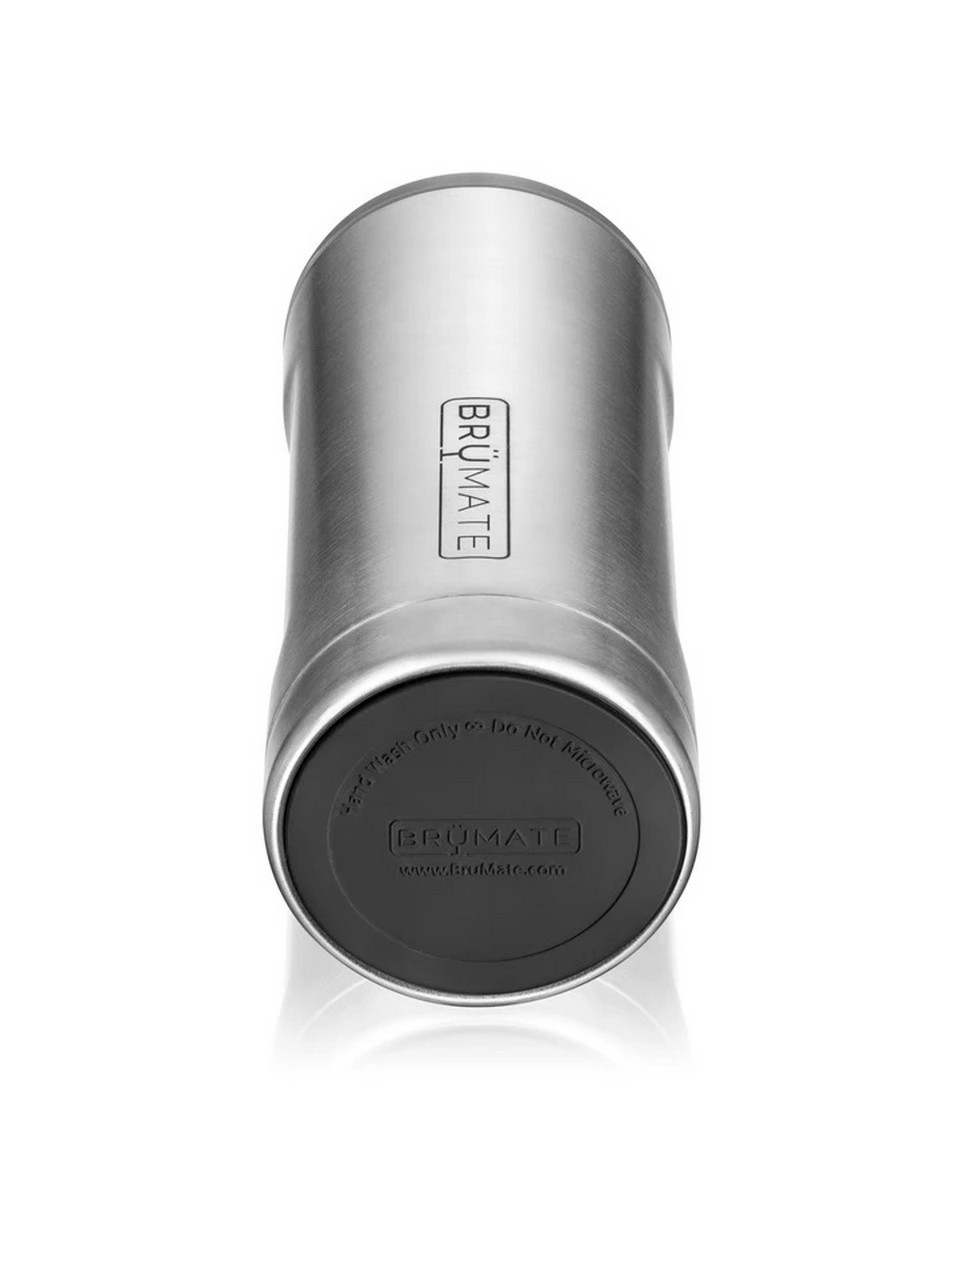 BrüMate Hopsulator Slim | Insulated Cooler Beverage Sleeve for Travel | Aqua | 12oz Slim Cans